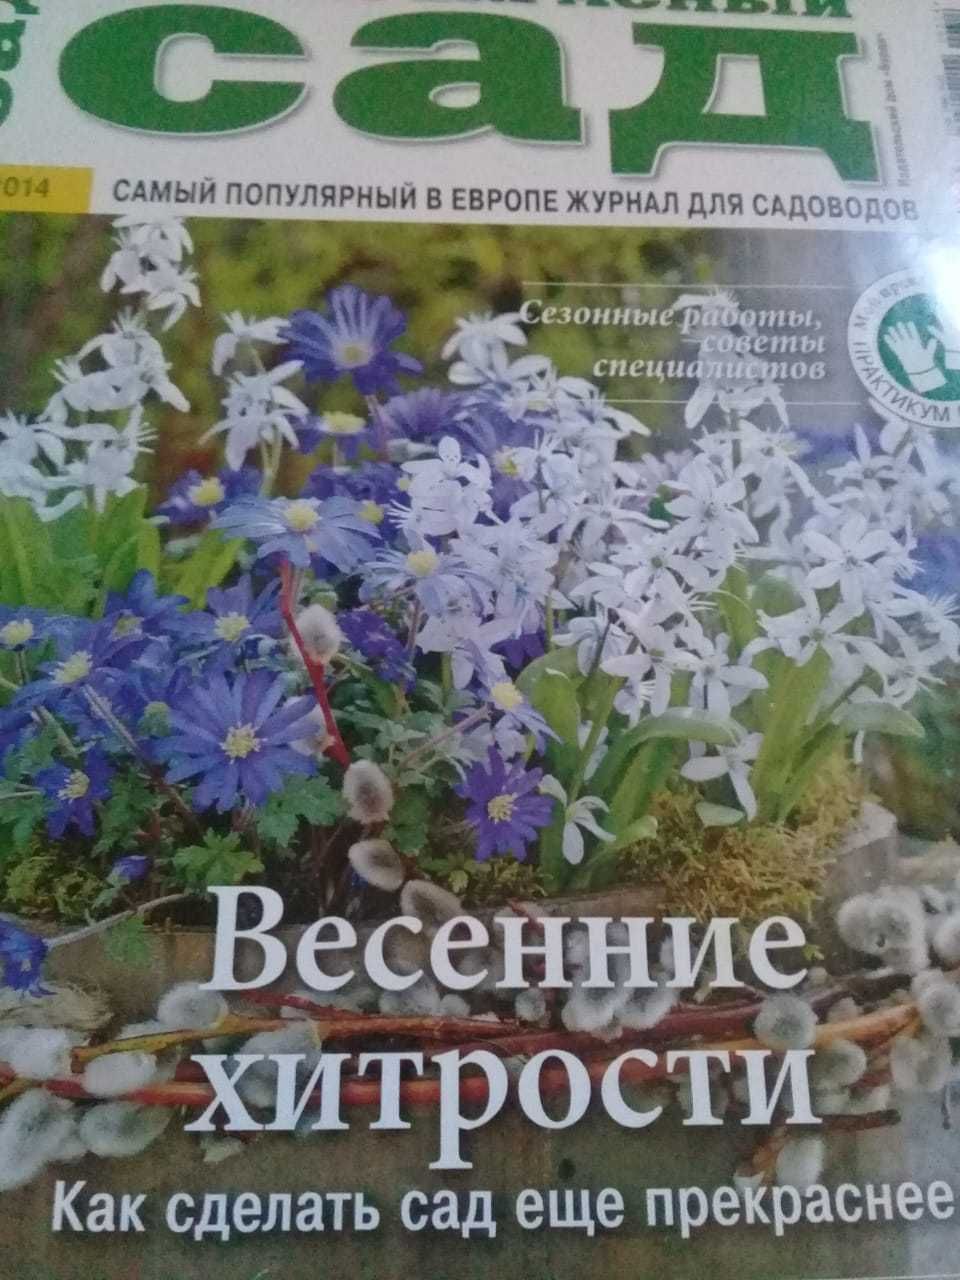 Журнал "Мой прекрасный сад"